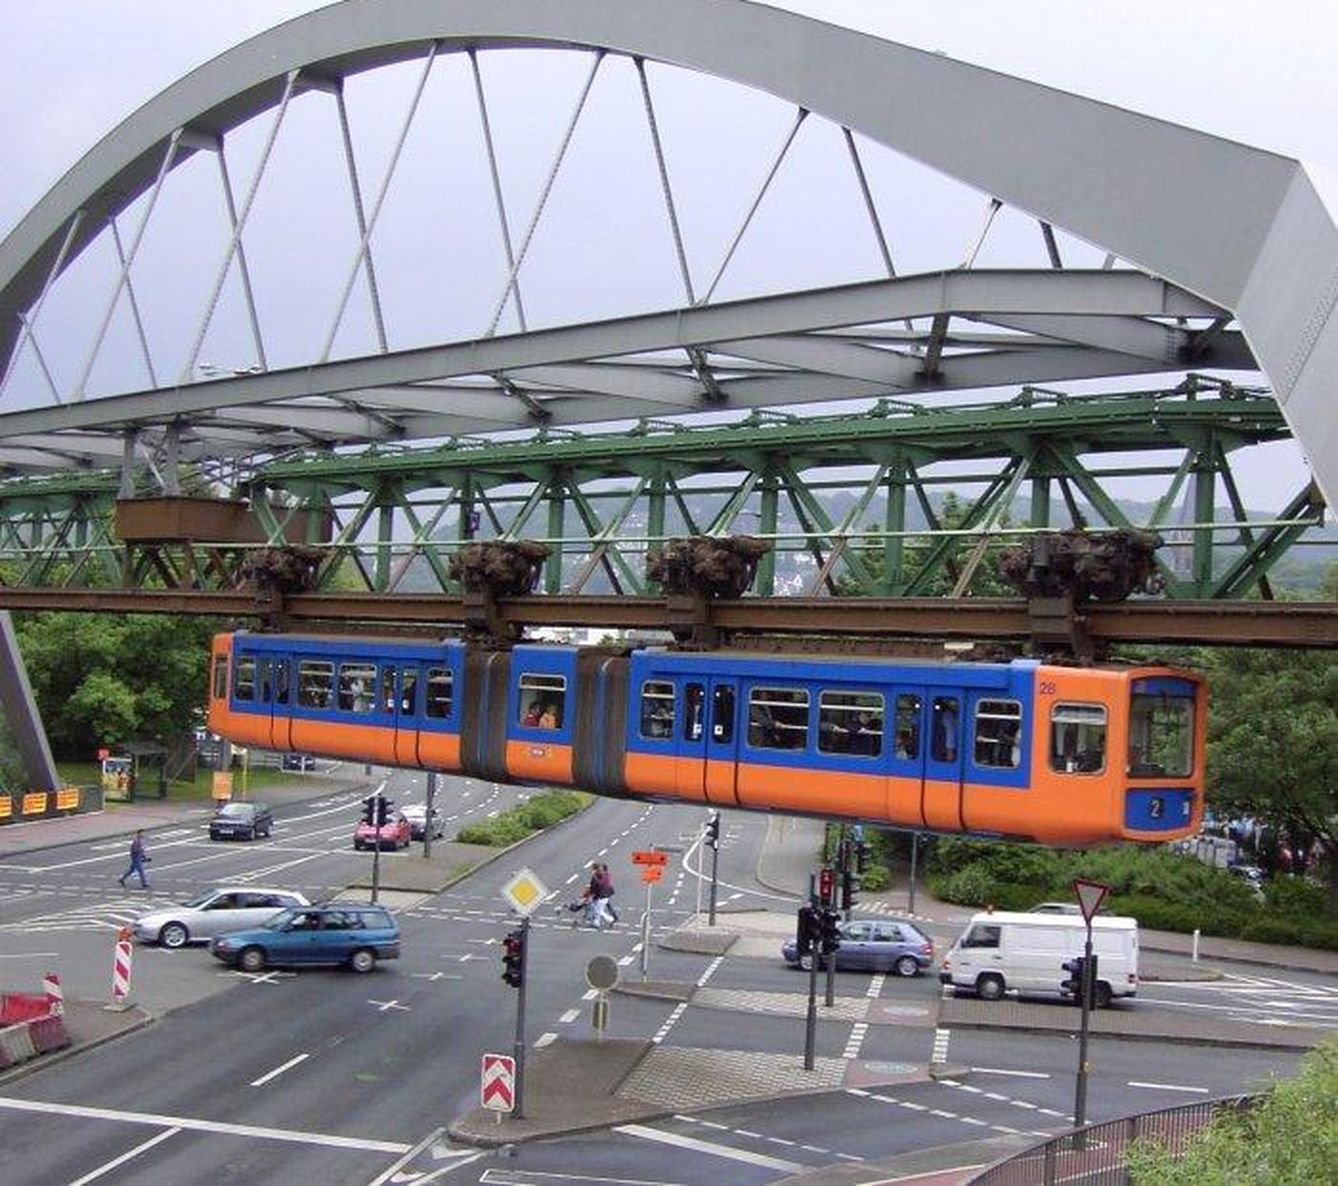 El ‘Wuppertaler Schwebebahn’ de Berlín, lo más parecido a aquella idea de rieles portacoches. (Wikipedia)